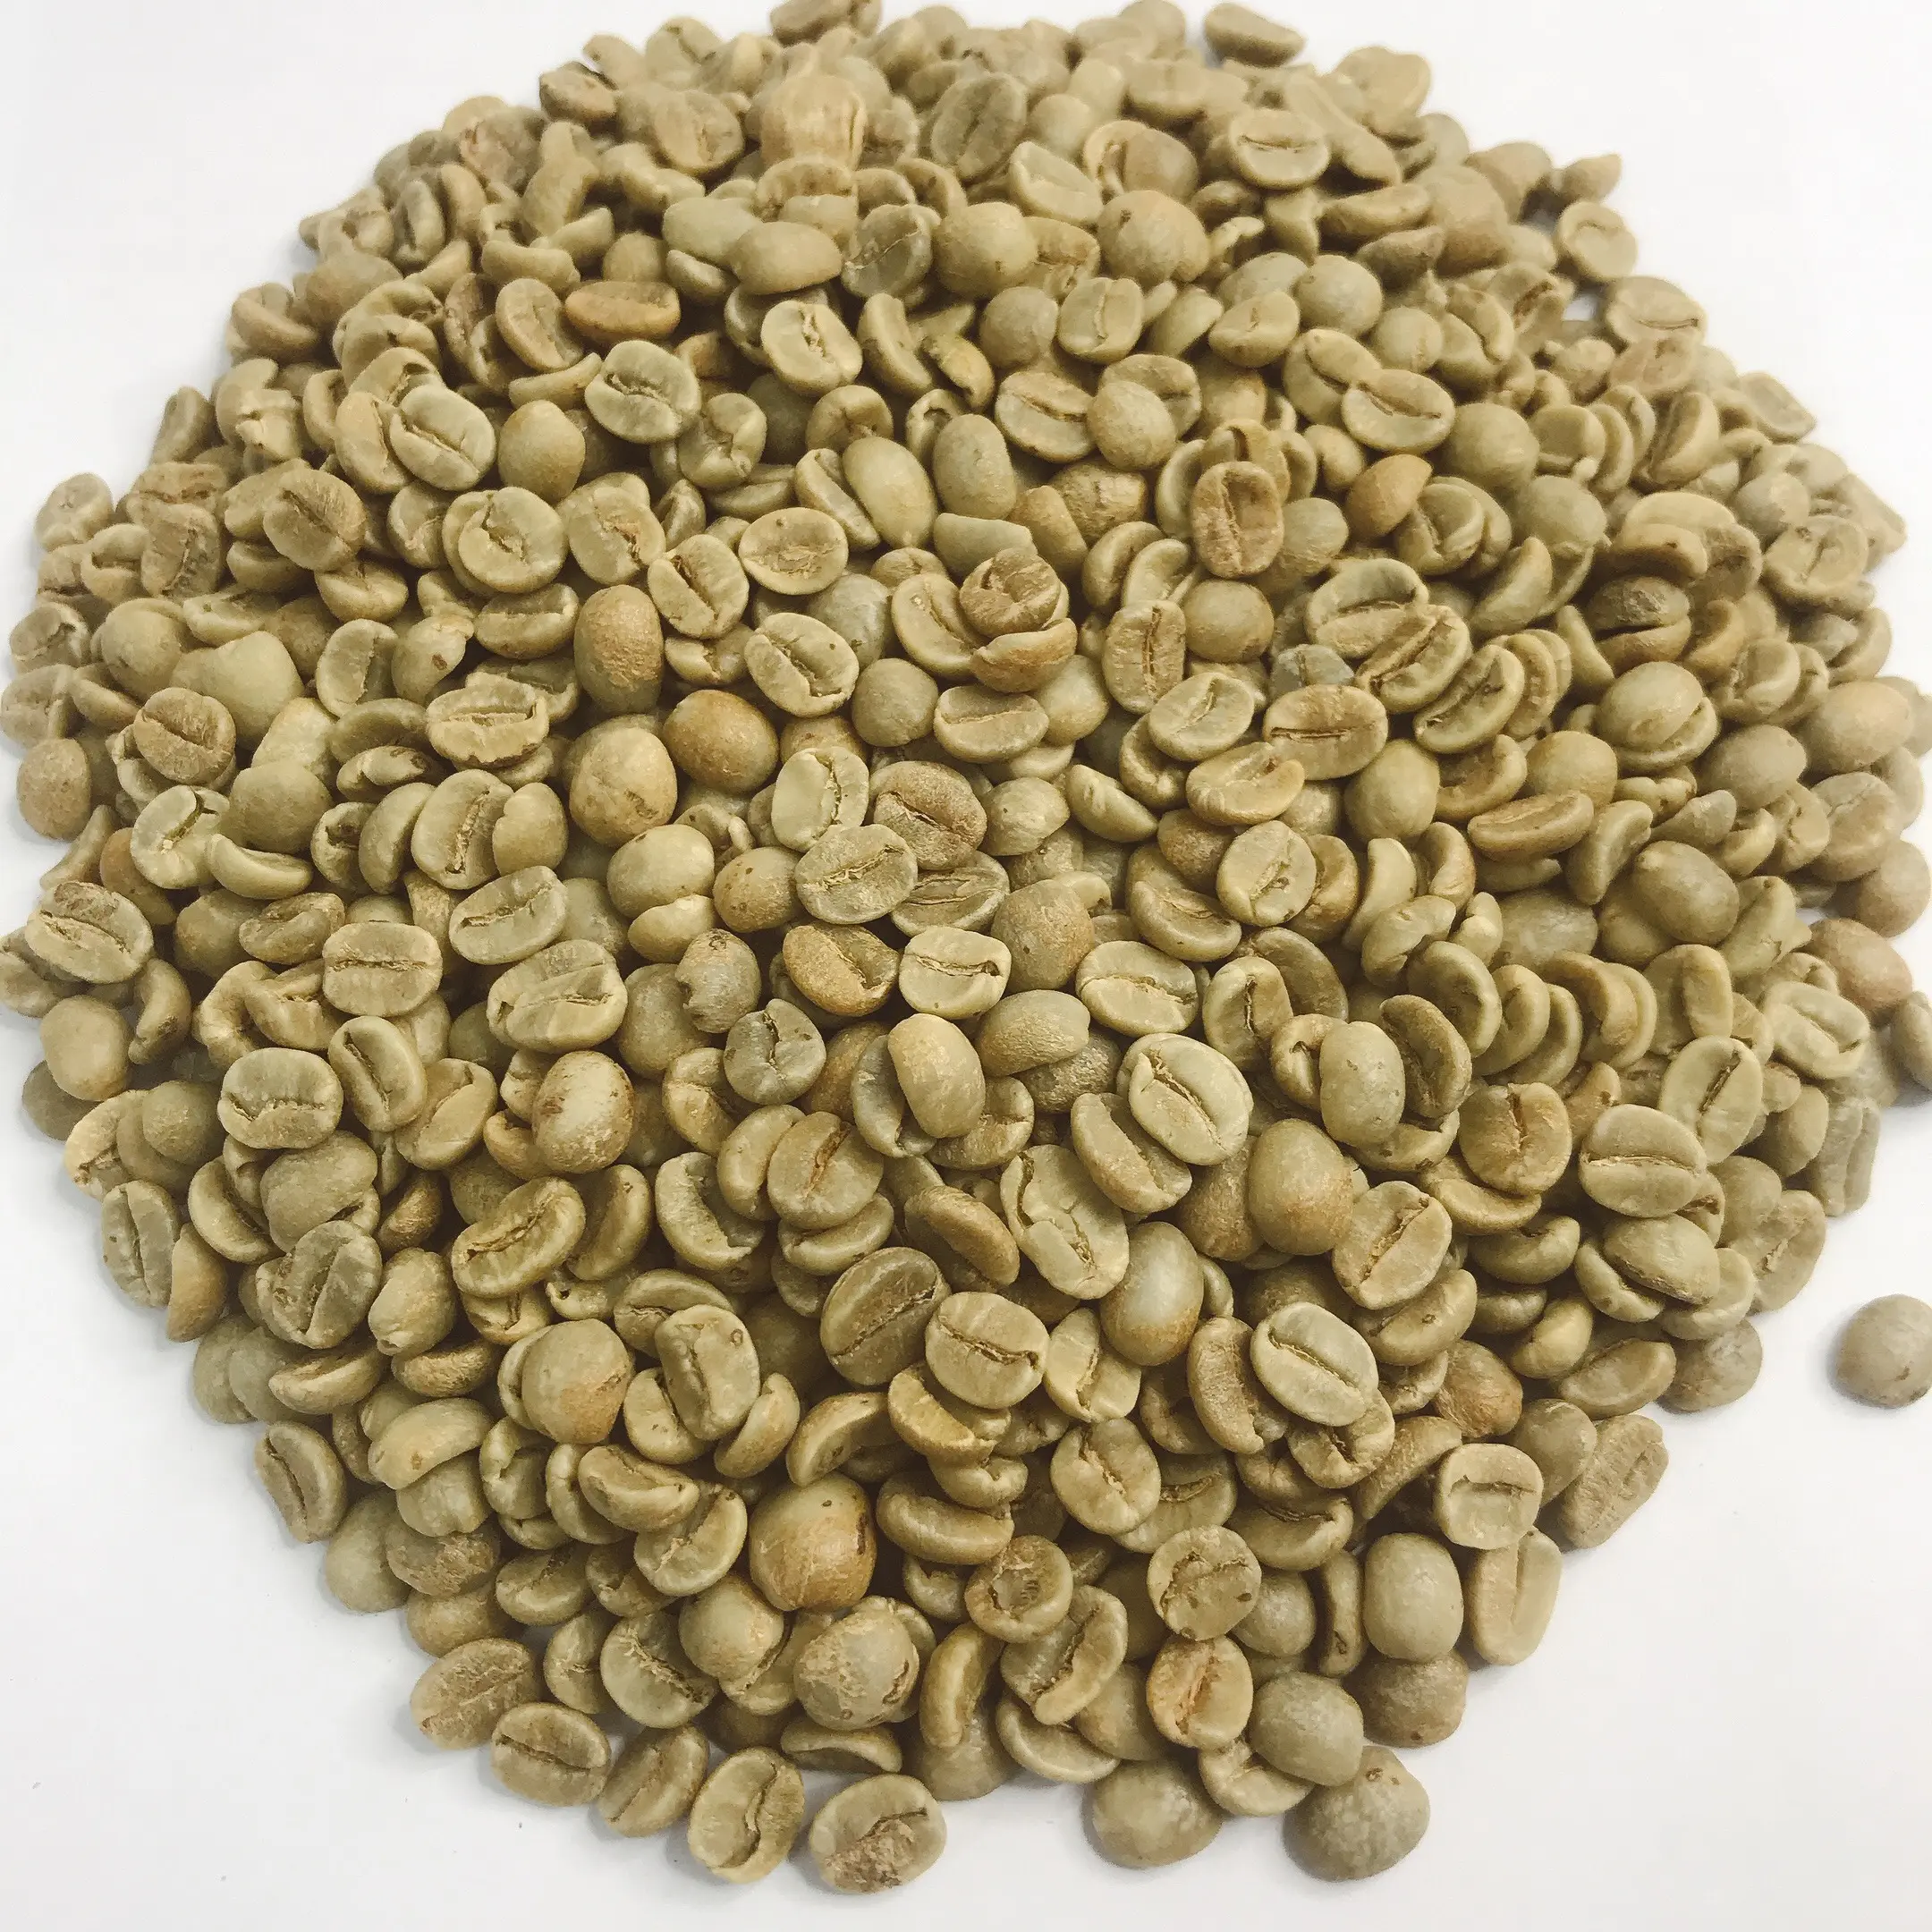 DETECH कॉफी प्रीमियम भुना हुआ कॉफी-हरी अरेबिका कॉफी बीन वियतनाम से उच्च गुणवत्ता 100% प्राकृतिक जहाज के लिए तैयार चारों ओर वें